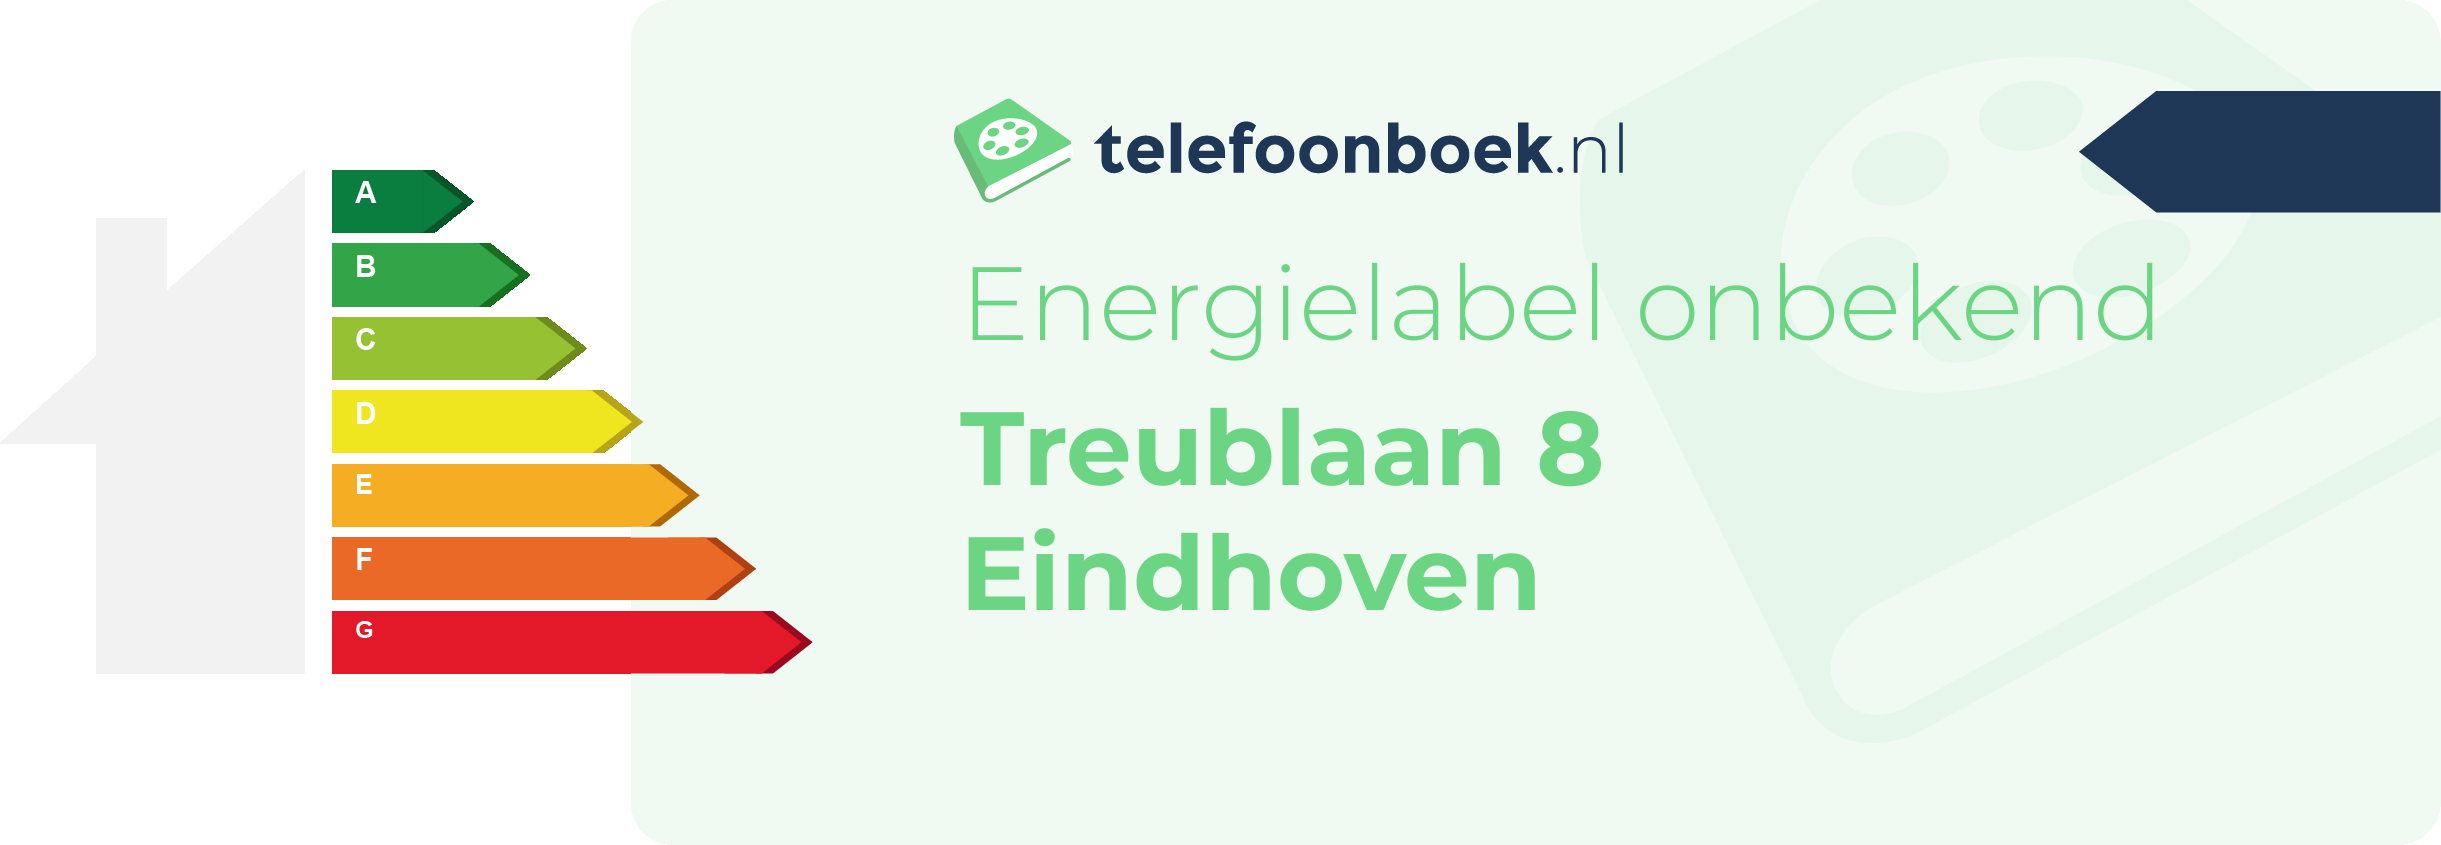 Energielabel Treublaan 8 Eindhoven